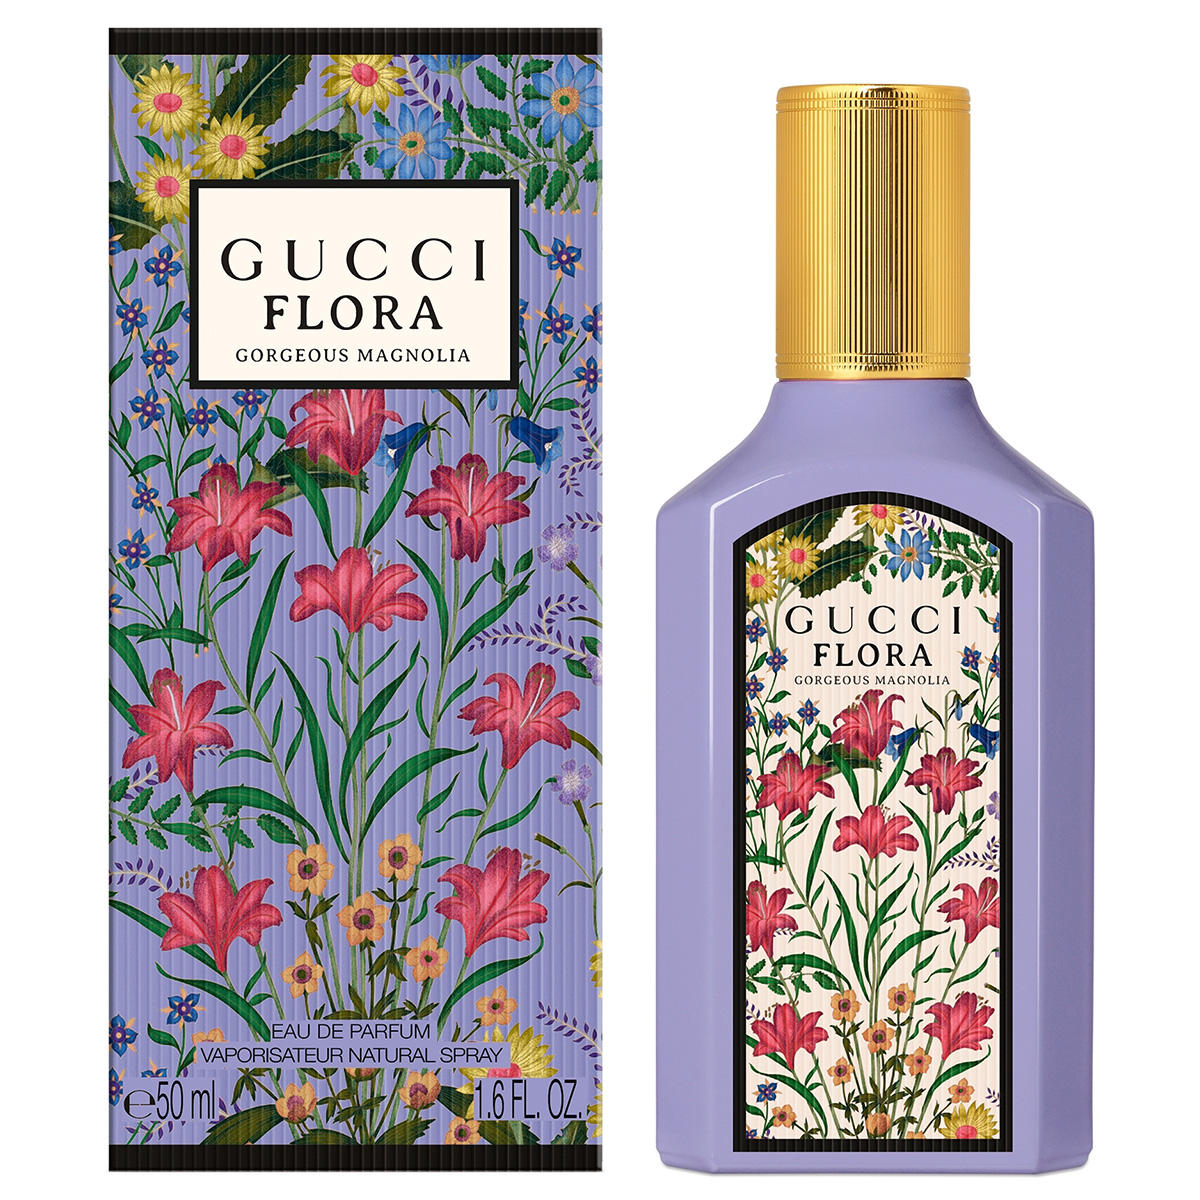 Gucci Flora Gorgeous Magnolia Eau de Parfum 50 ml - 2